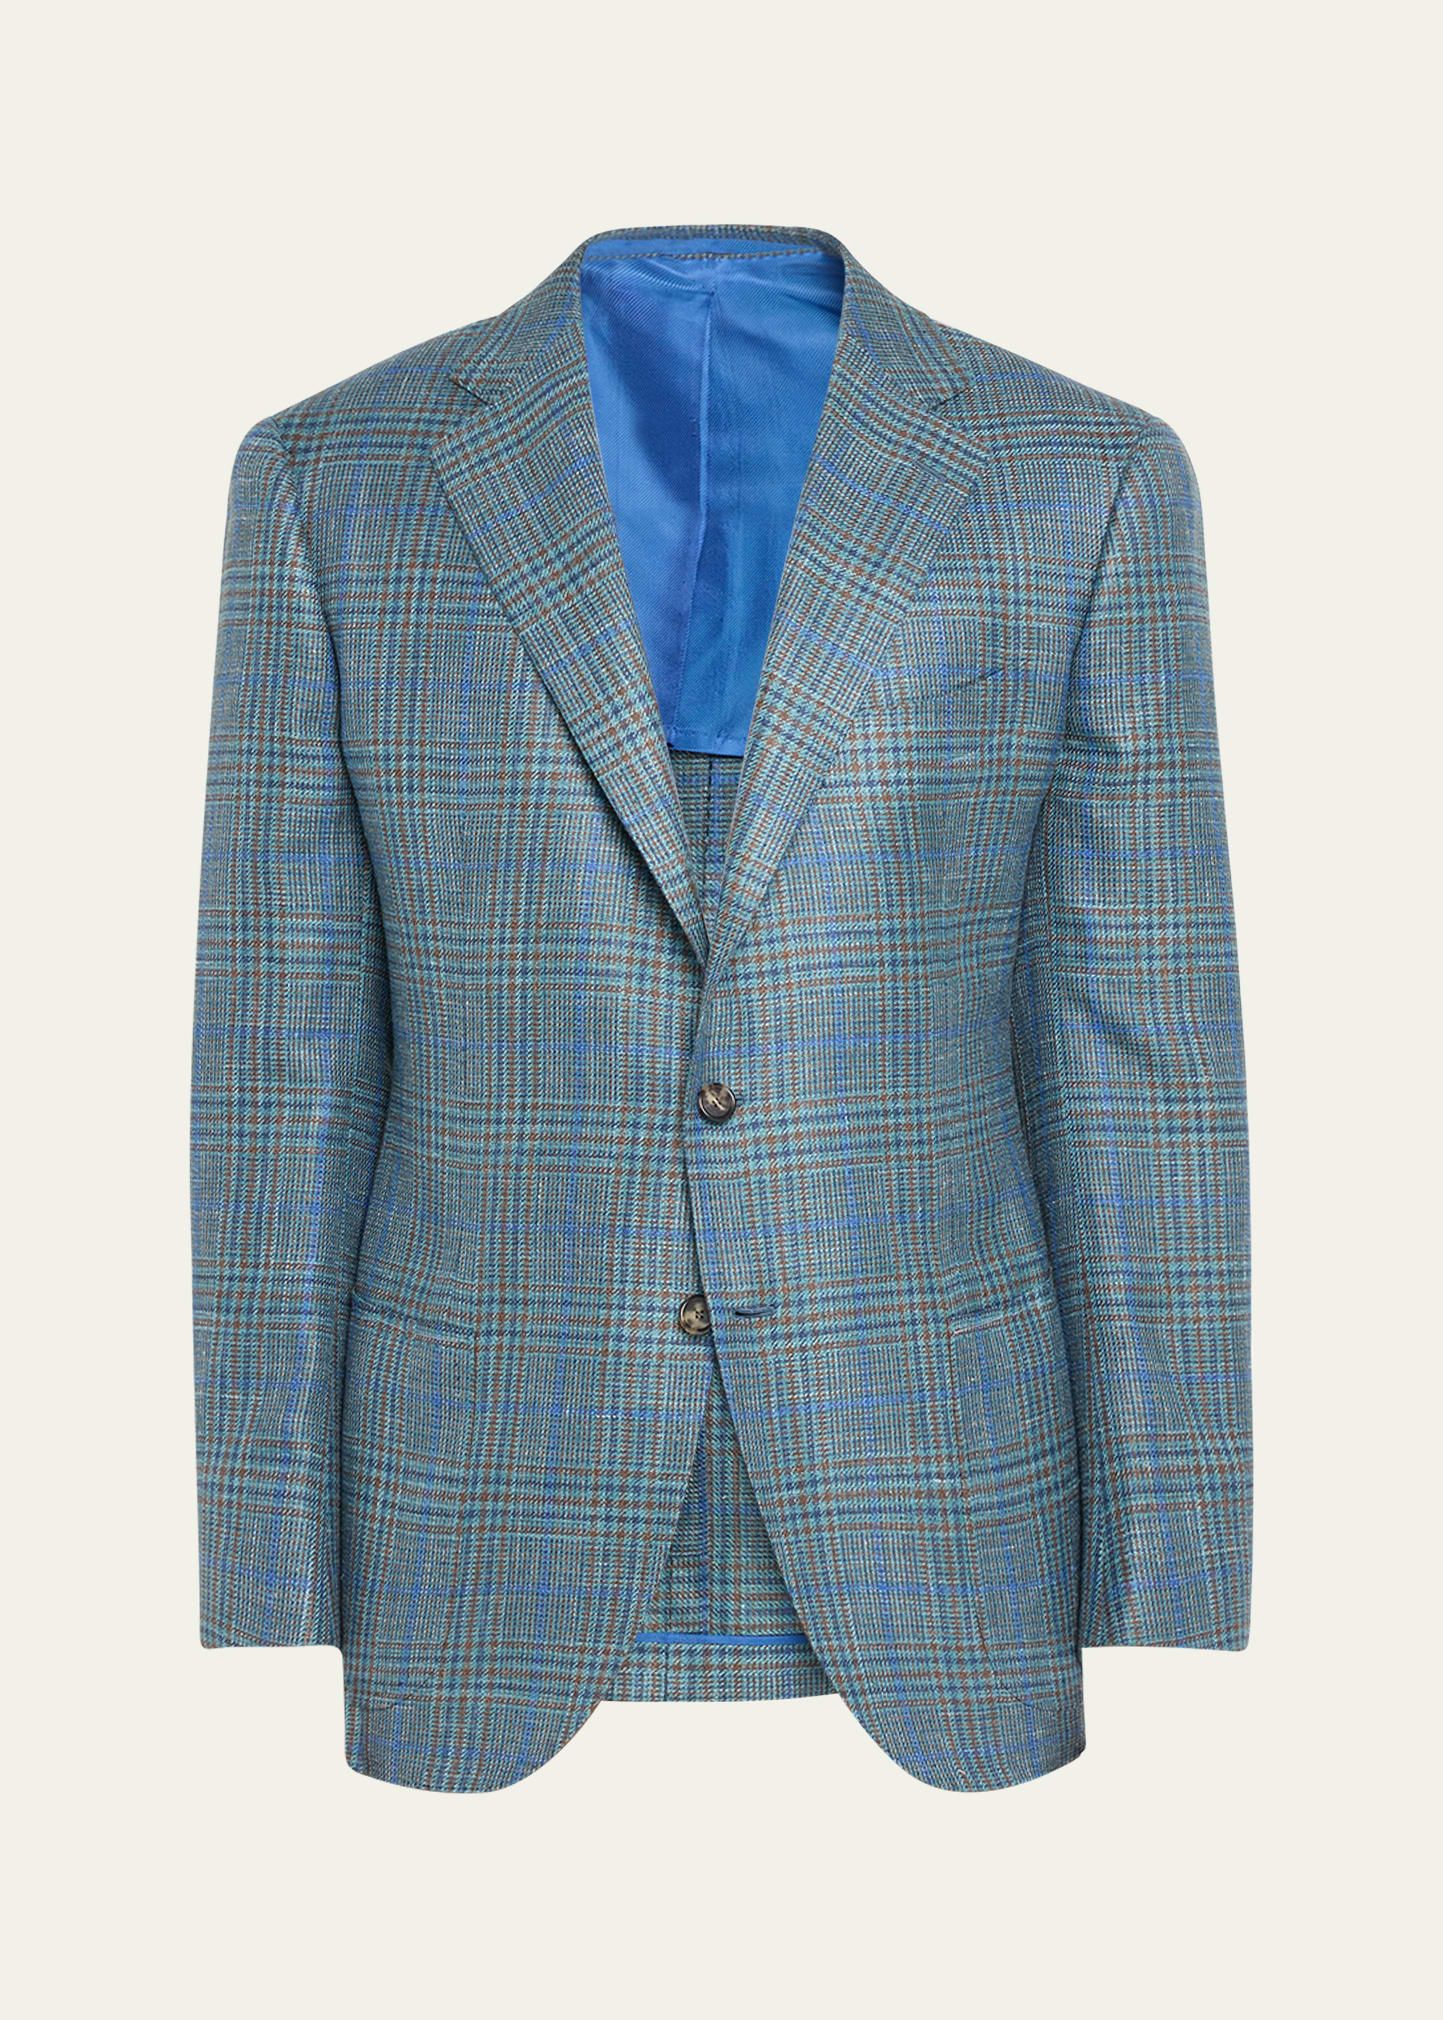 Men's Cashmere-Blend Plaid Sport Coat